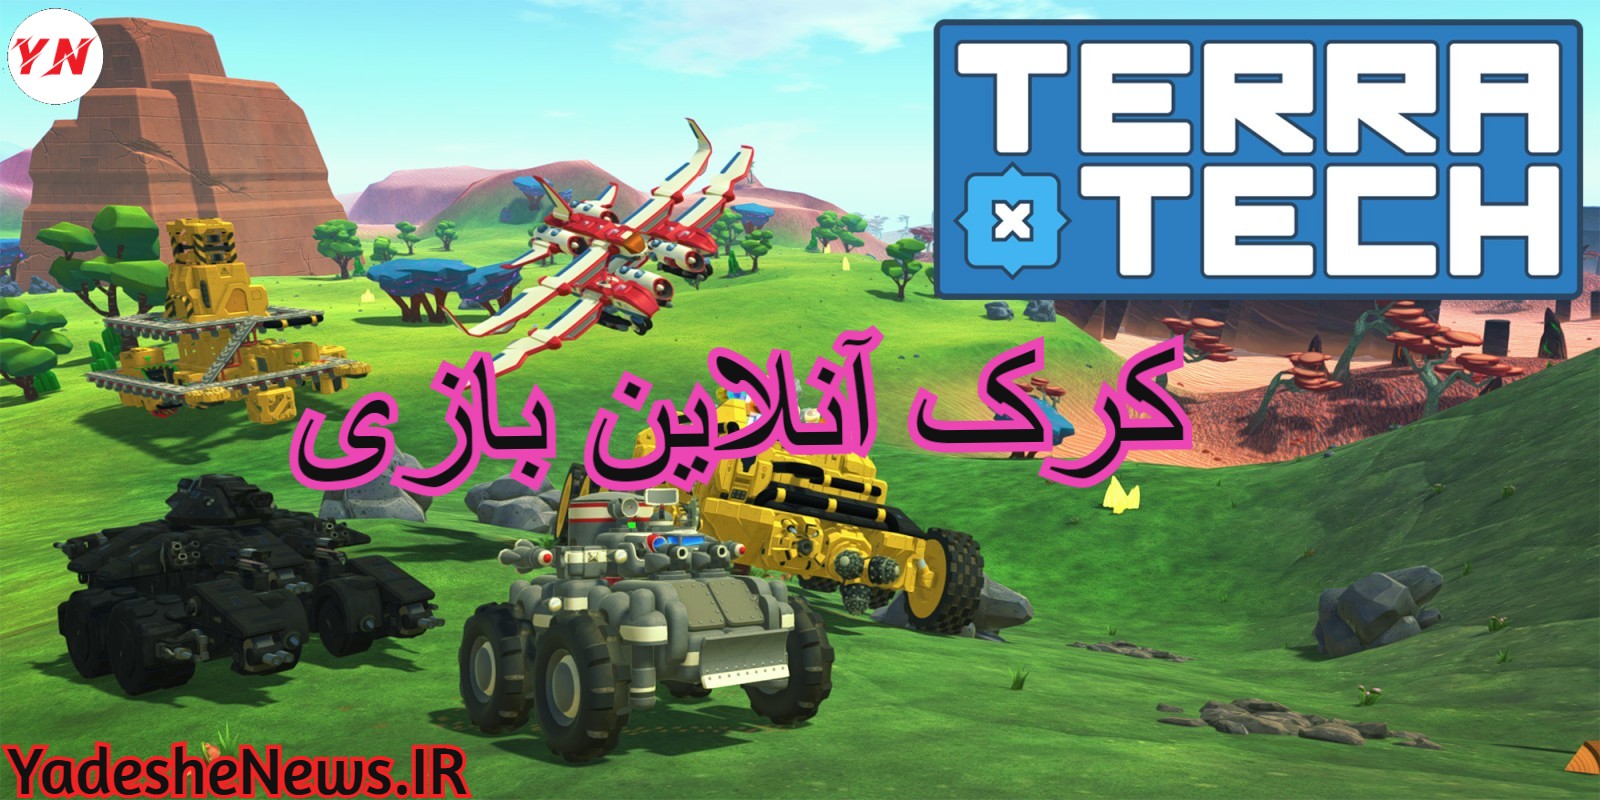 دانلود کرک آنلاین بازی TerraTech